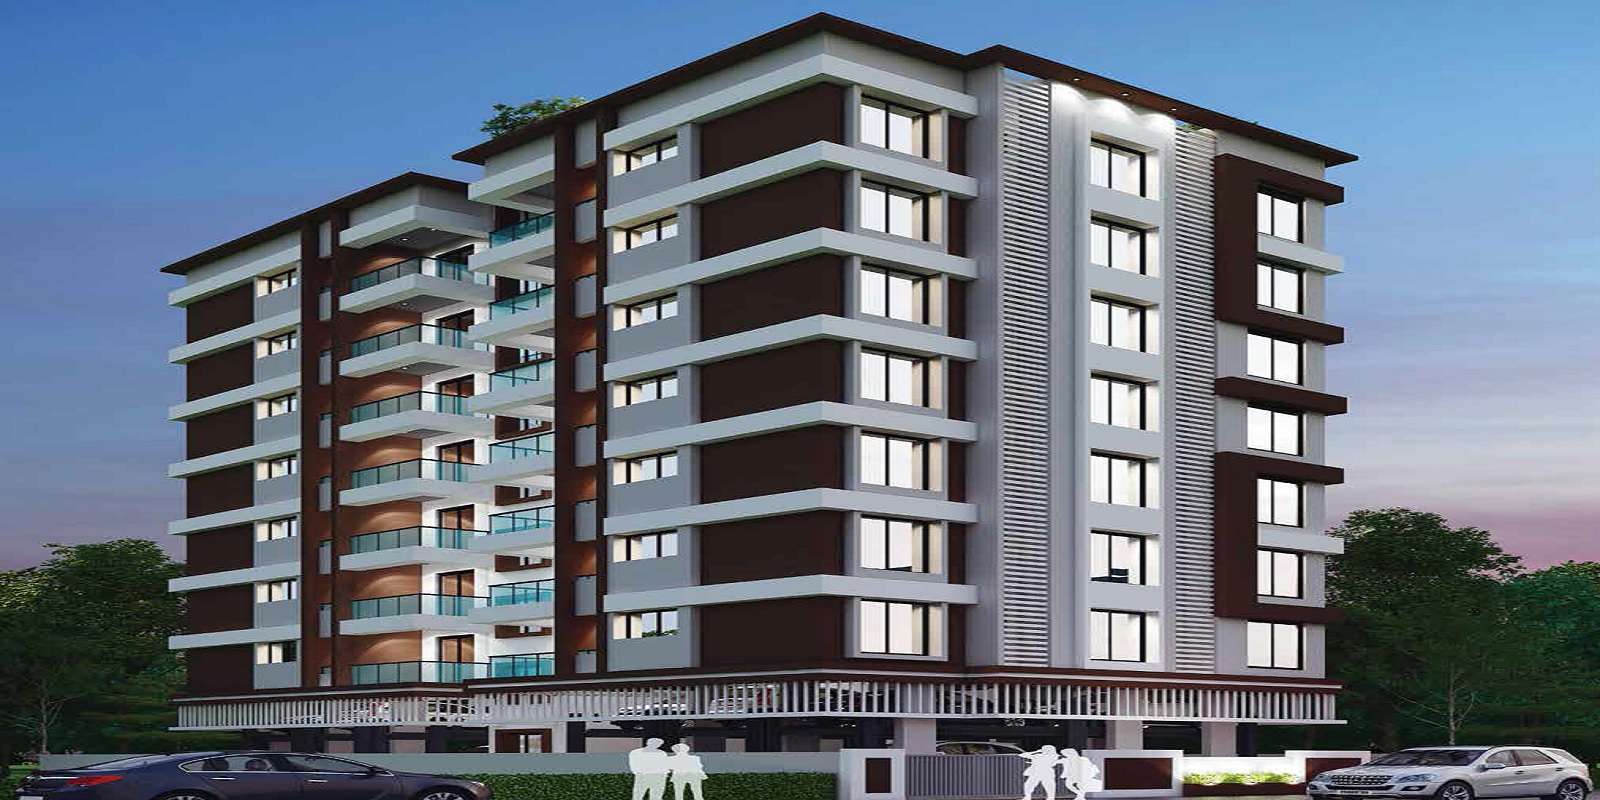 Sanjivani Snehal Apartments Cover Image